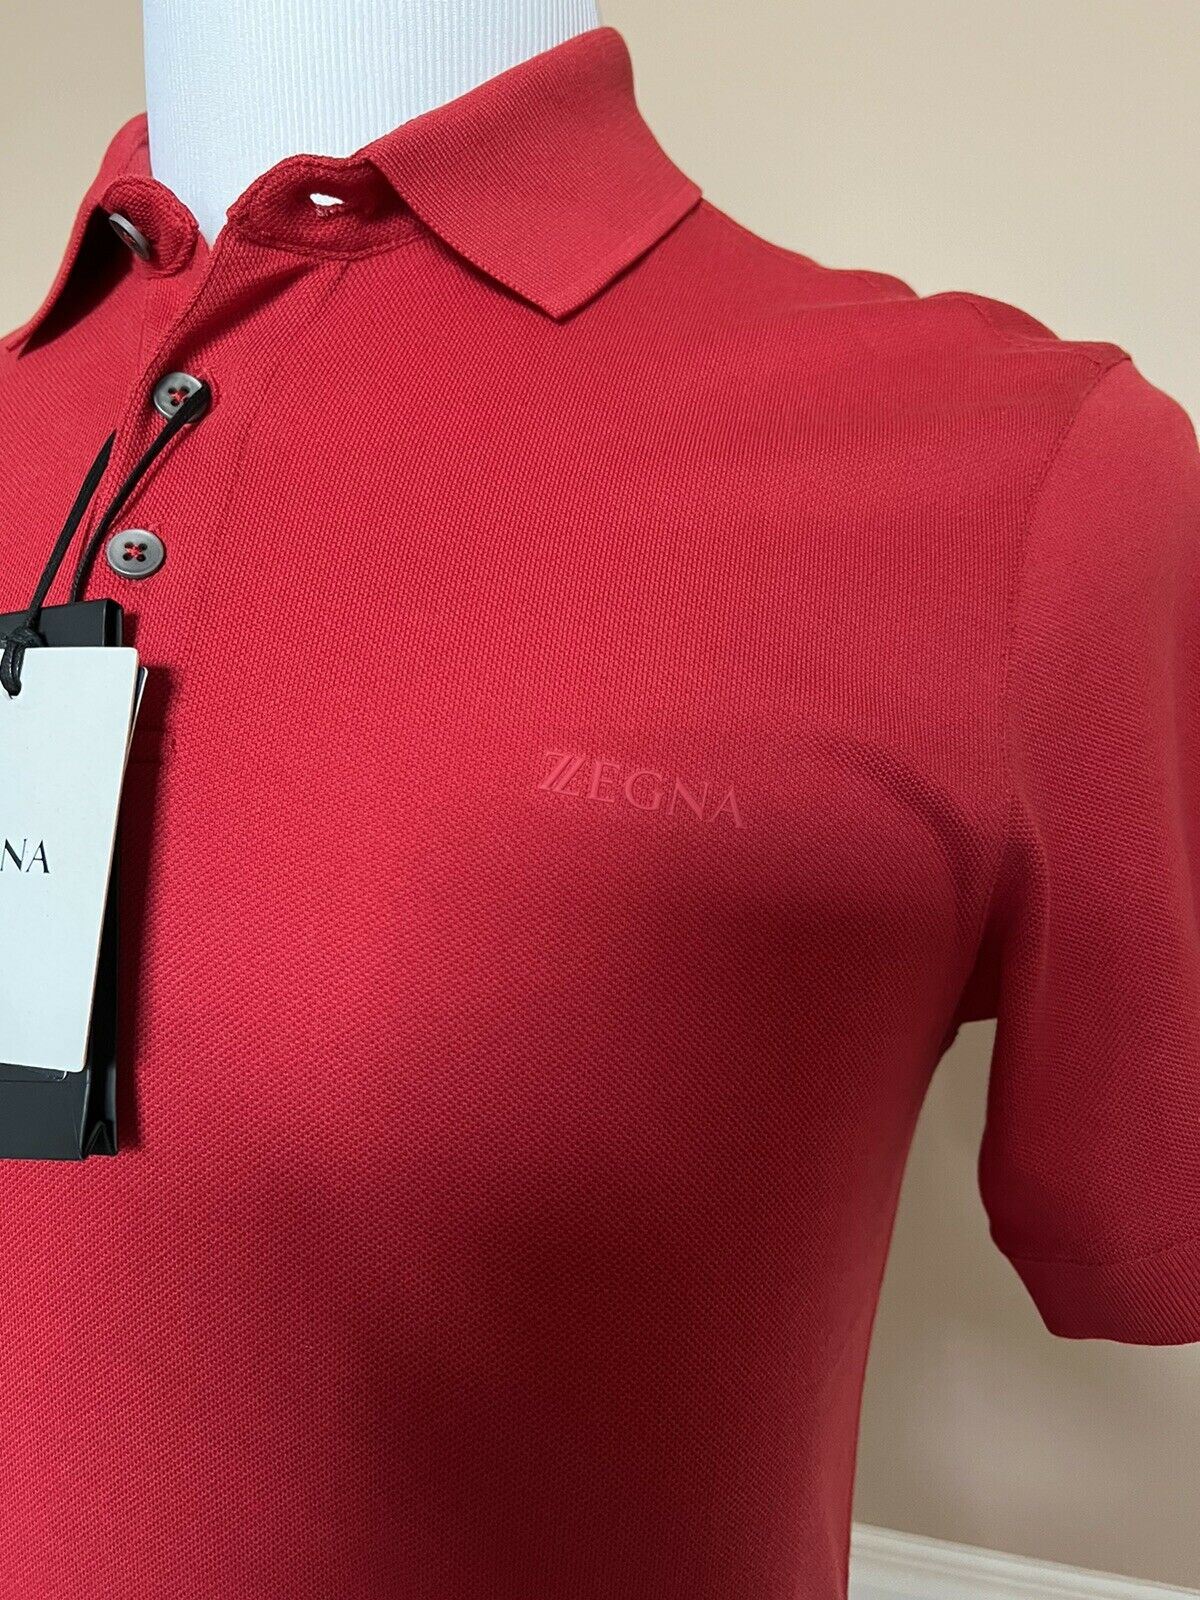 СЗТ 375 долларов США ZEGNA Хлопковая рубашка-поло с рубашкой, красная XS ZZF600